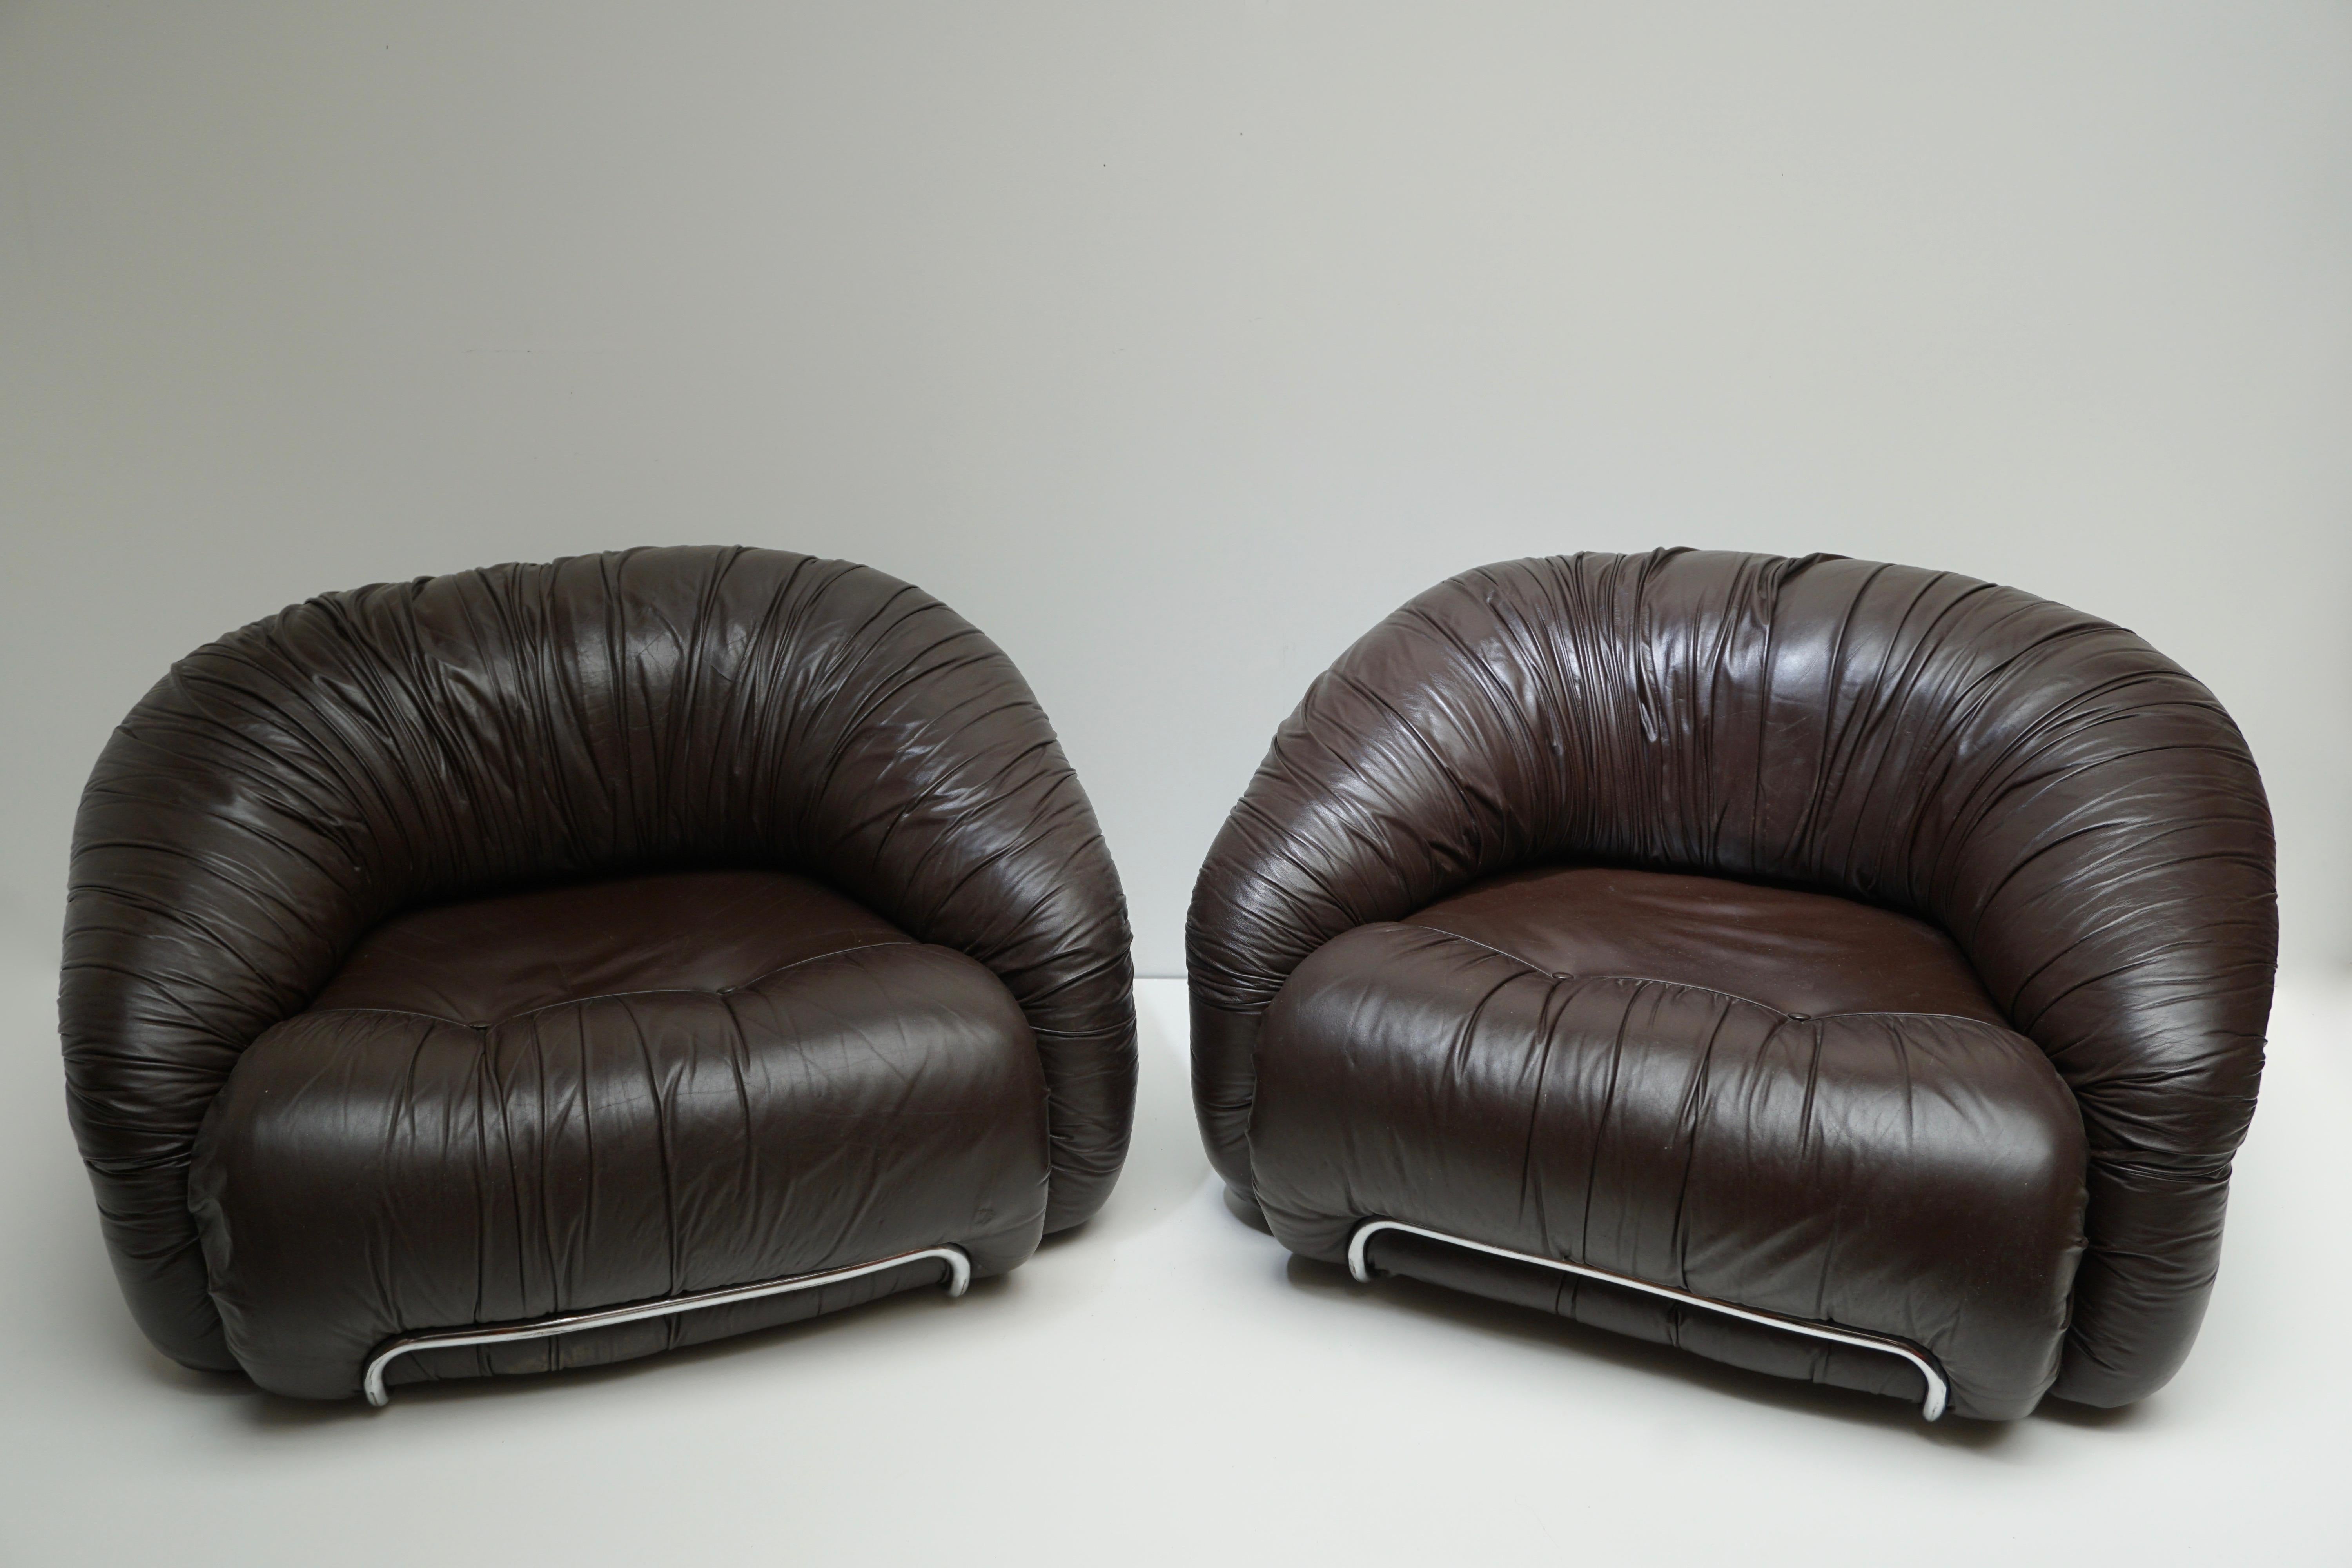 Ein Loungesessel / Clubsessel im Stil von Gianfranco Frattini. Jeder Sessel ist mit dem originalen braunen Lederbezug in einem verchromten Rohrgestell ausgestattet. Hergestellt in Italien, ca. 1970er Jahre.

Der Sessel, der noch verfügbar ist, hat